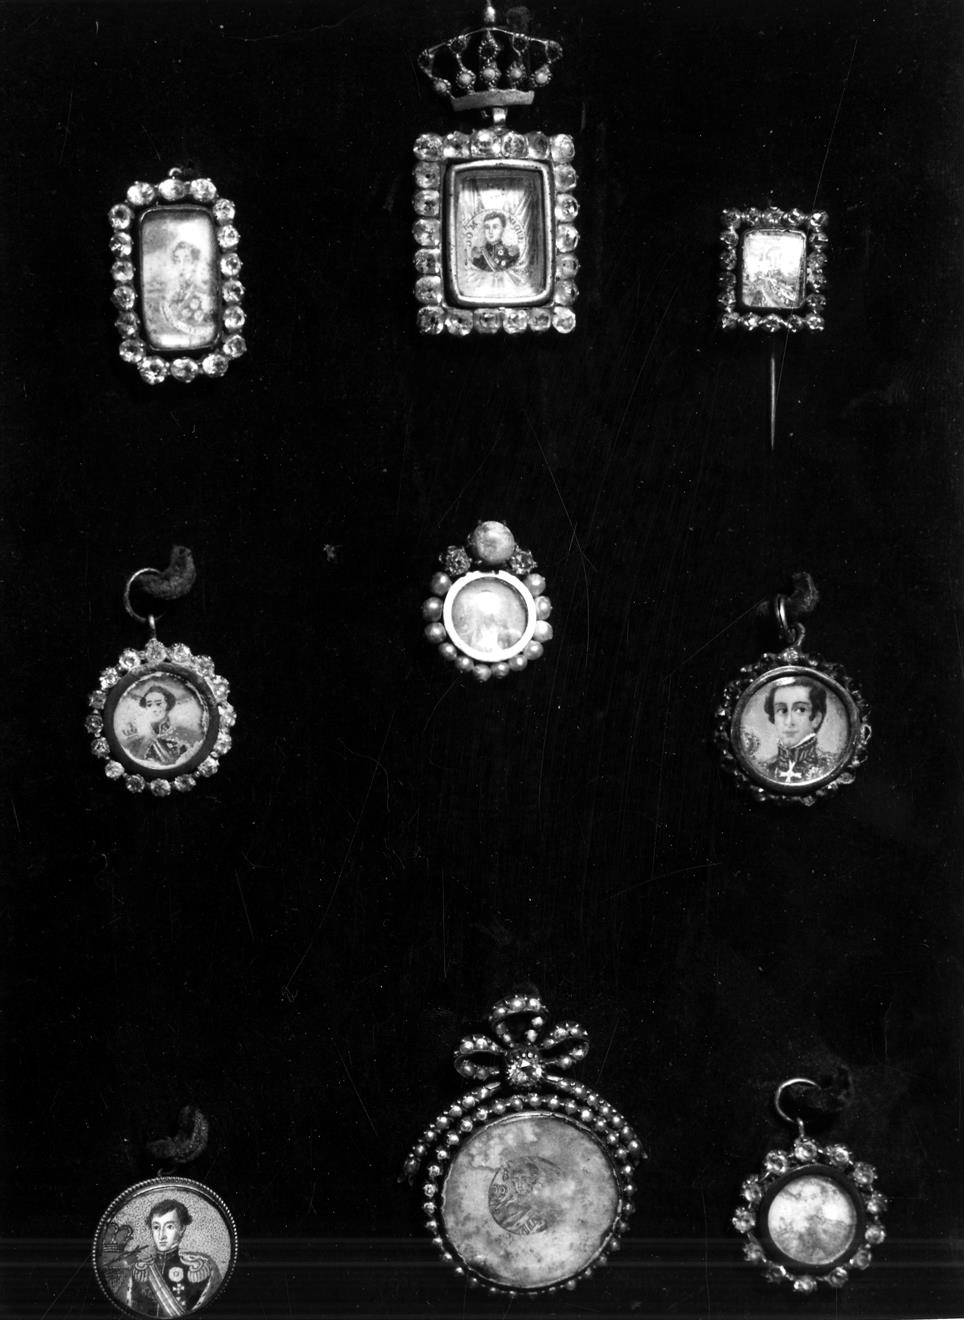 No rescaldo da exposição documental sobre el-rei D. Miguel I : vários objectos que pertenceram a D. Miguel